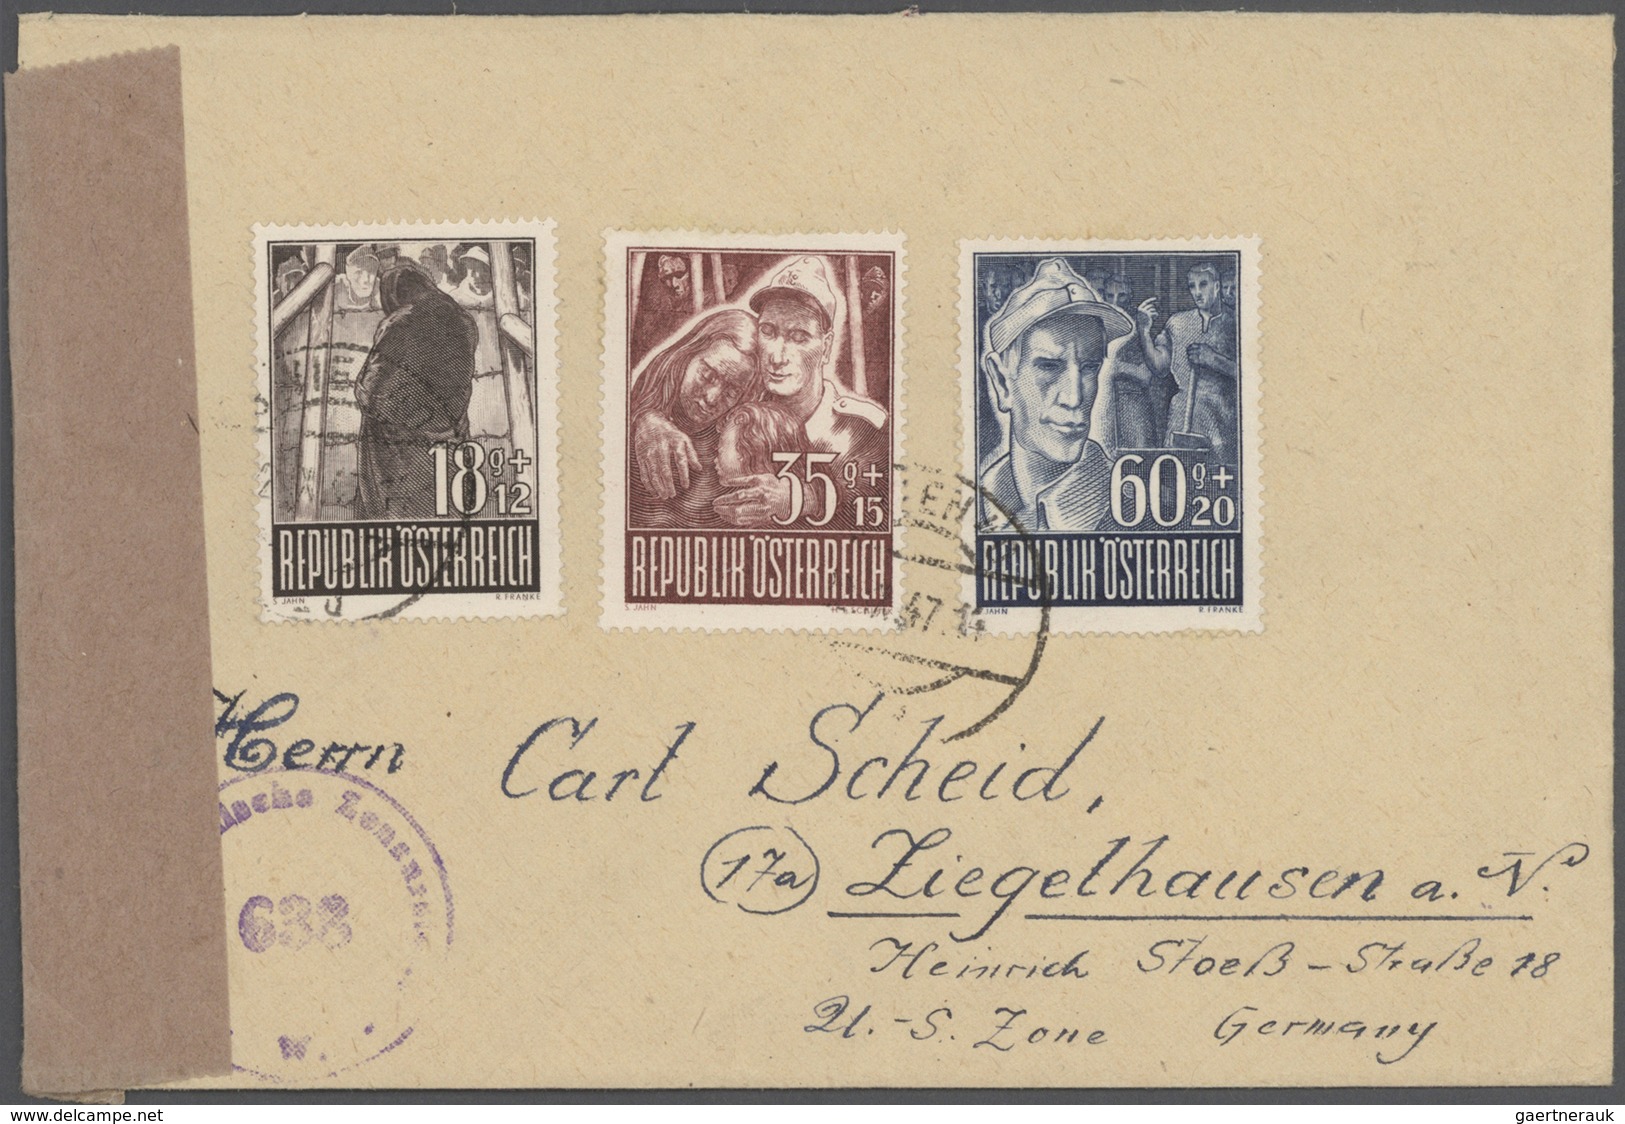 Br/GA Österreich: 1945/1959, Posten von ca. 100 Belegen mit vielen guten Stücken und schönen Frankaturen,